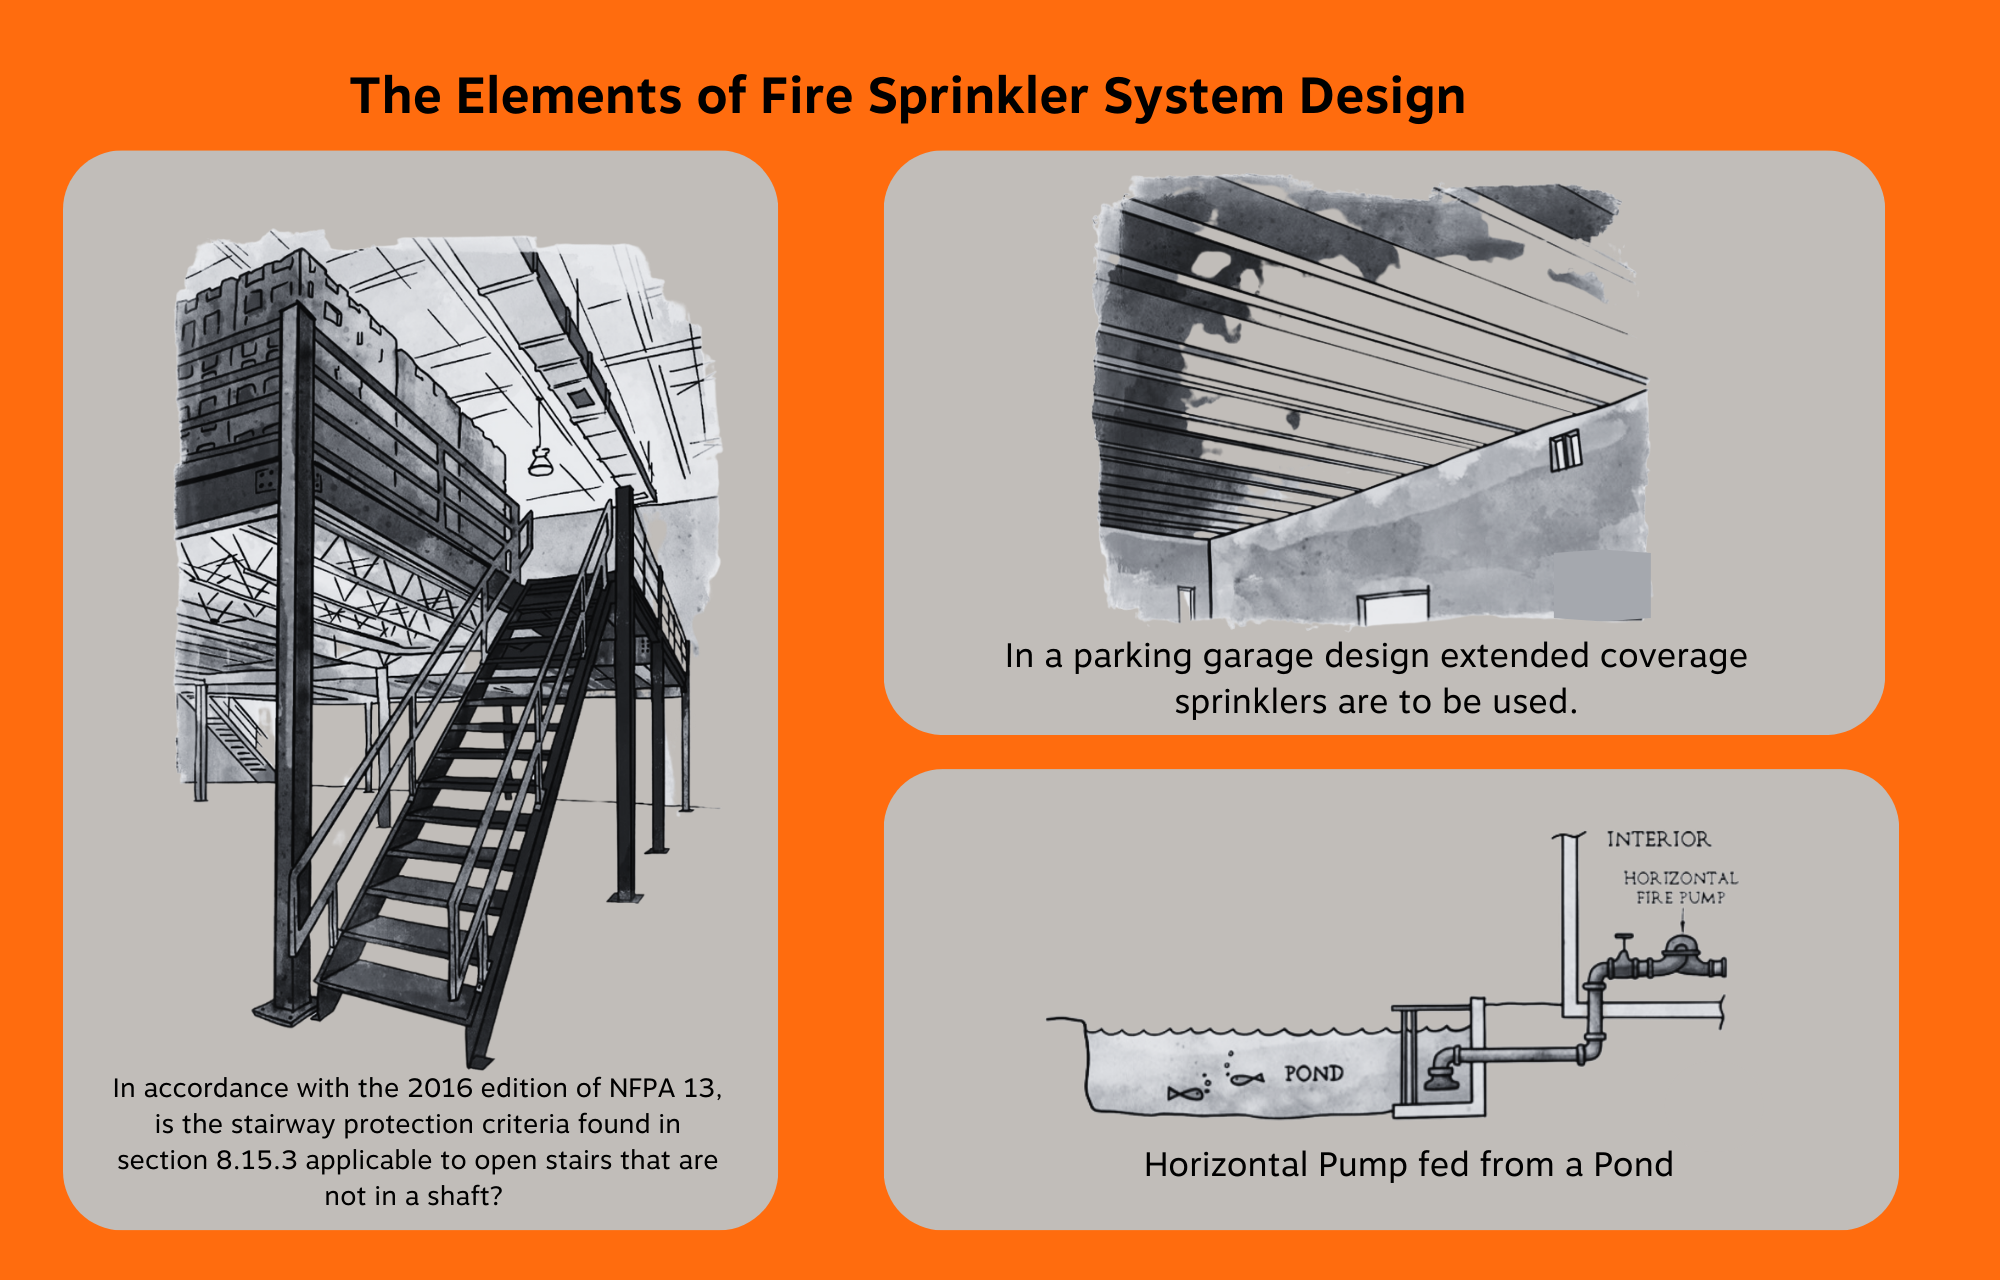 The Elements of Fire Sprinkler System Design